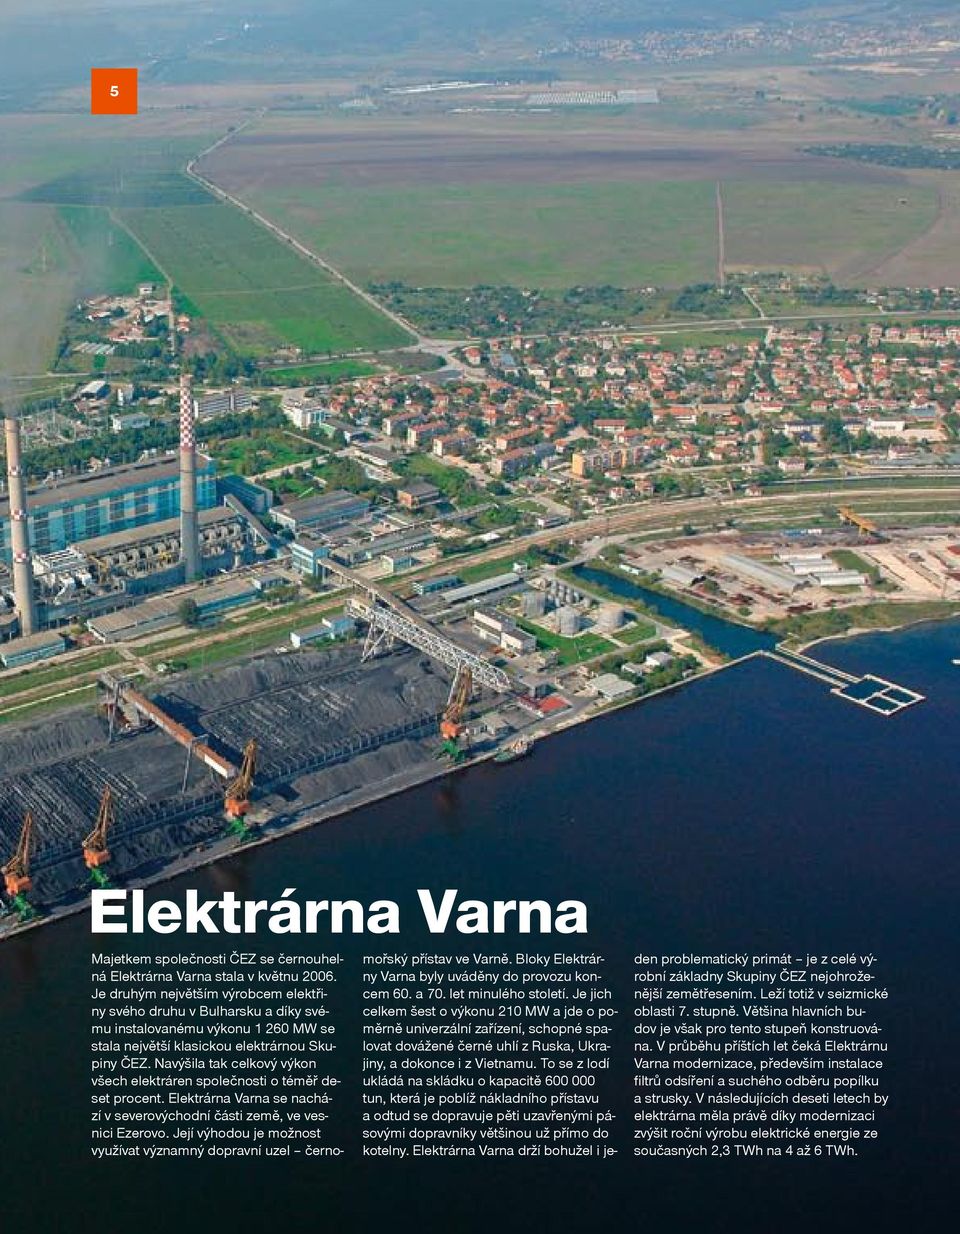 Navýšila tak celkový výkon všech elektráren společnosti o téměř deset procent. Elektrárna Varna se nachází v severovýchodní části země, ve vesnici Ezerovo.